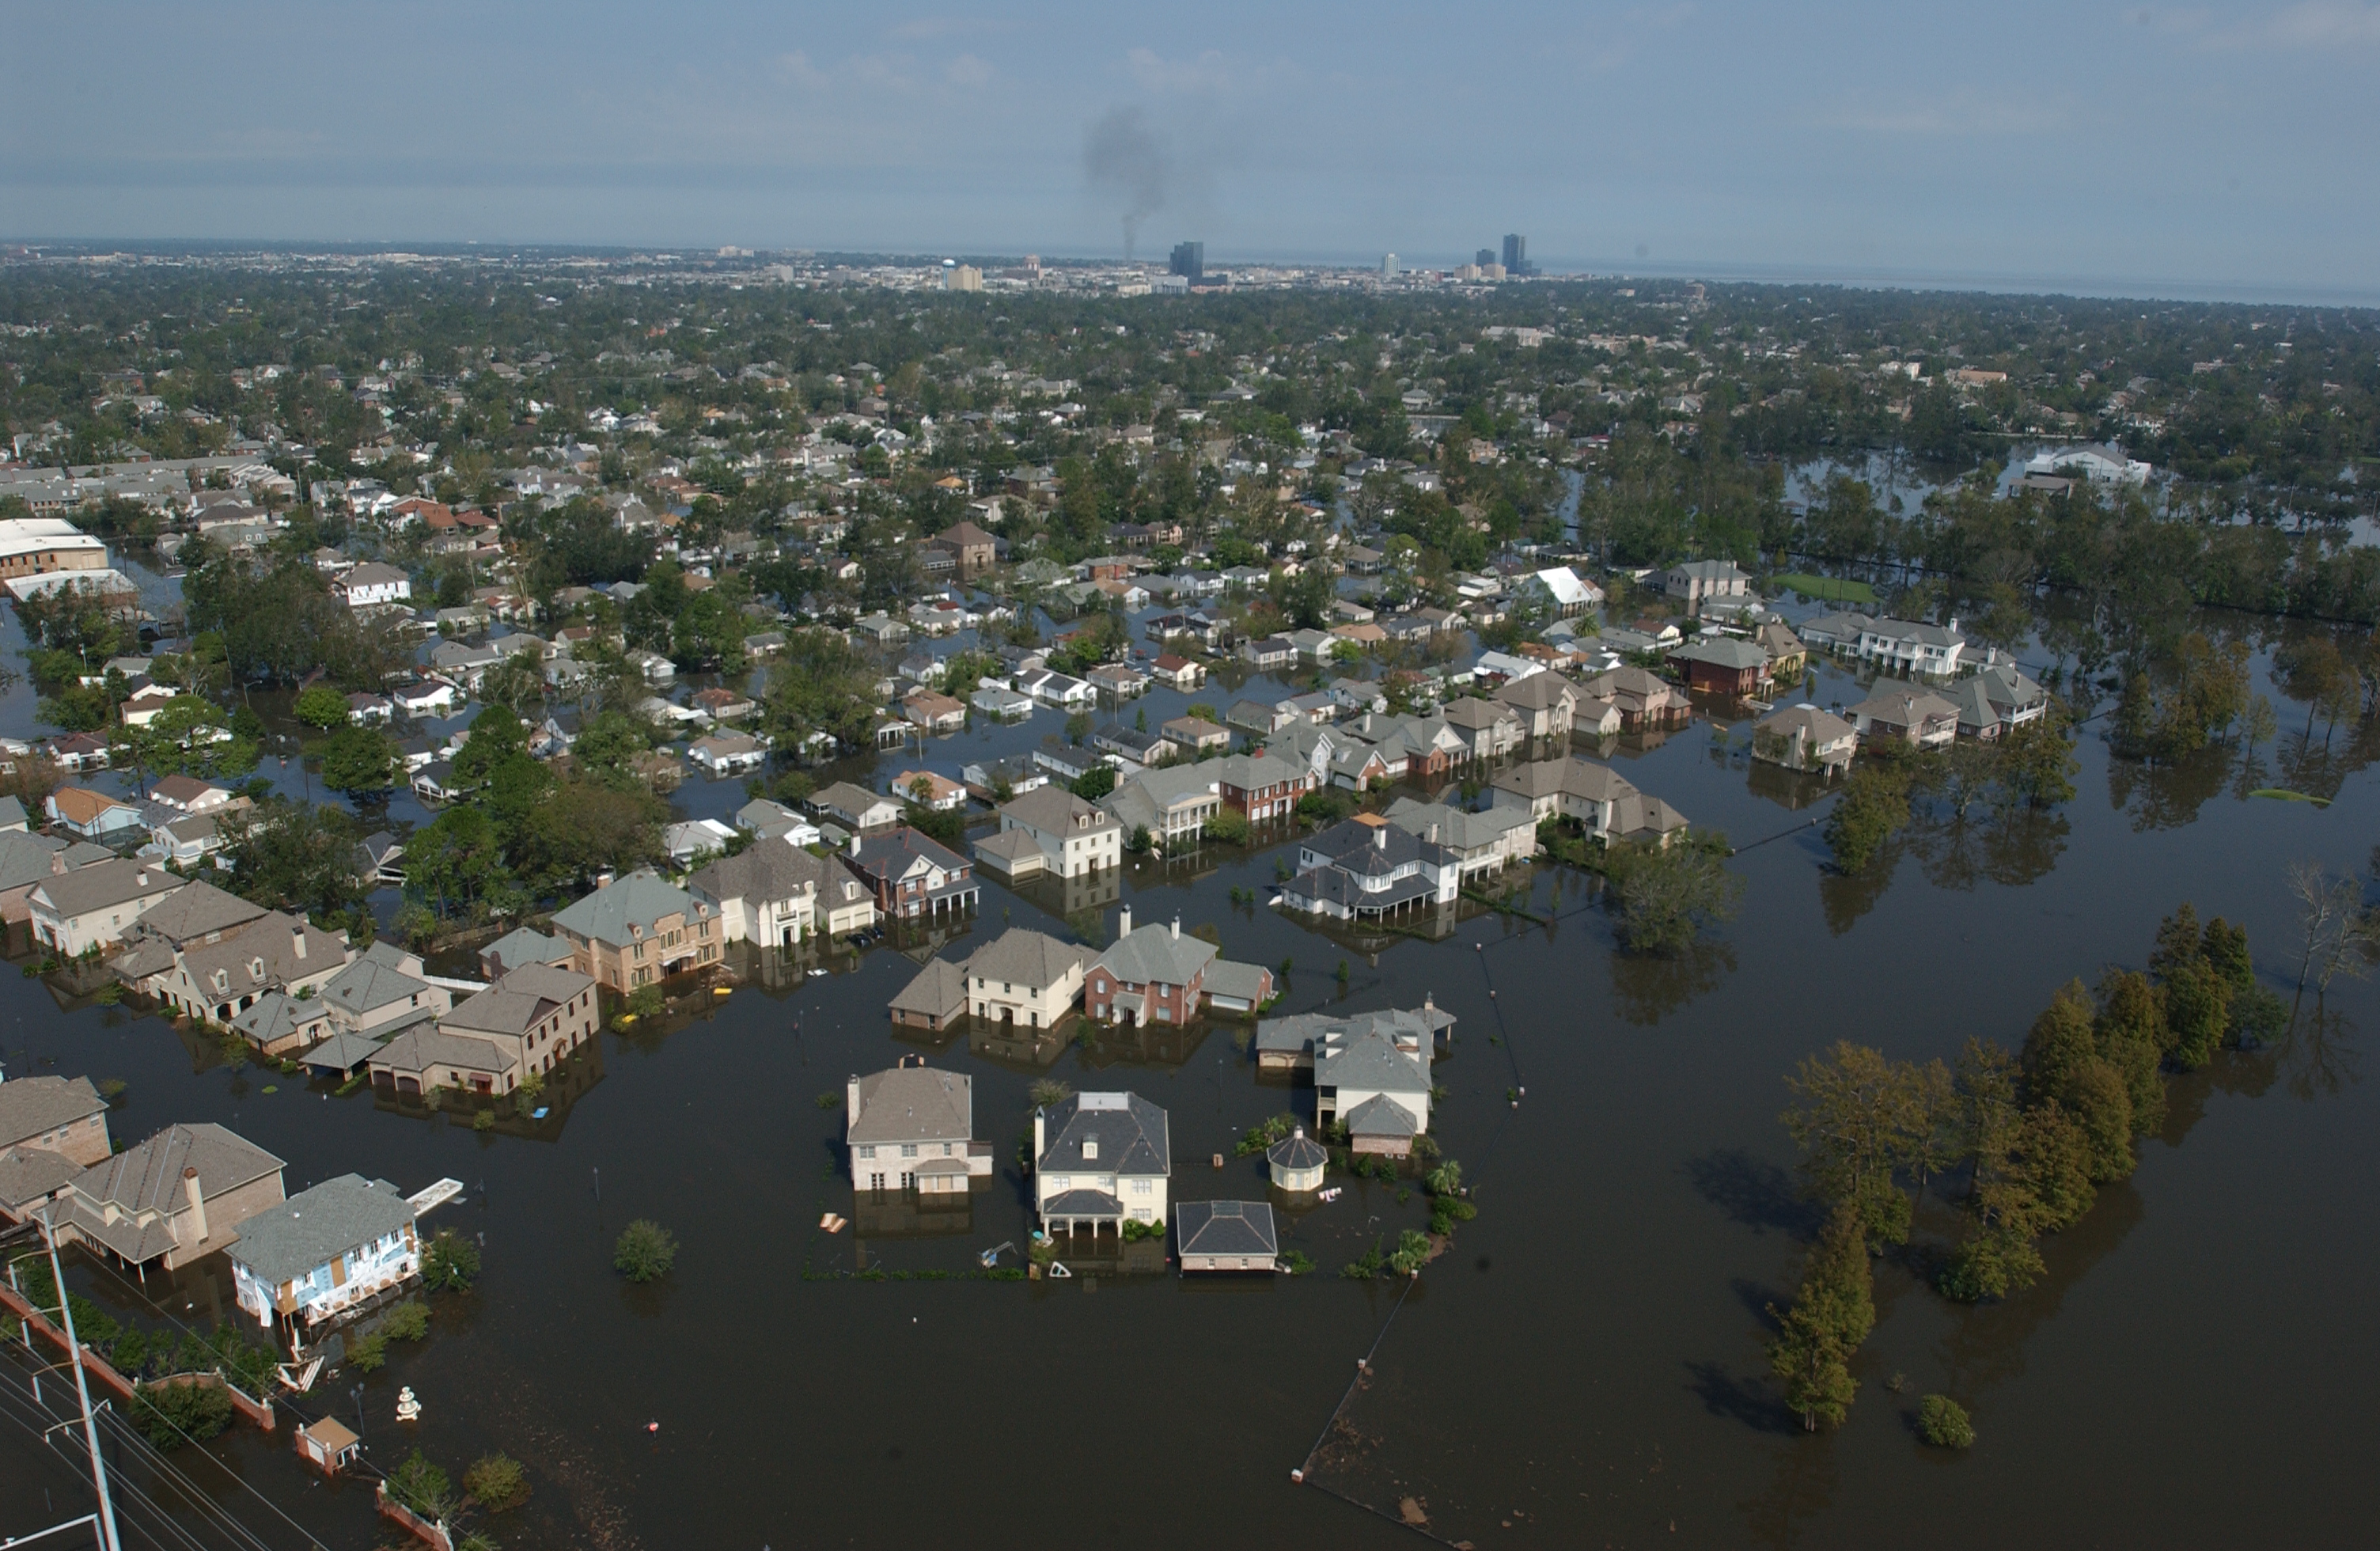 FEMA - 18111 - Photograph by Jocelyn Augustino taken on 08-30-2005 in Louisiana